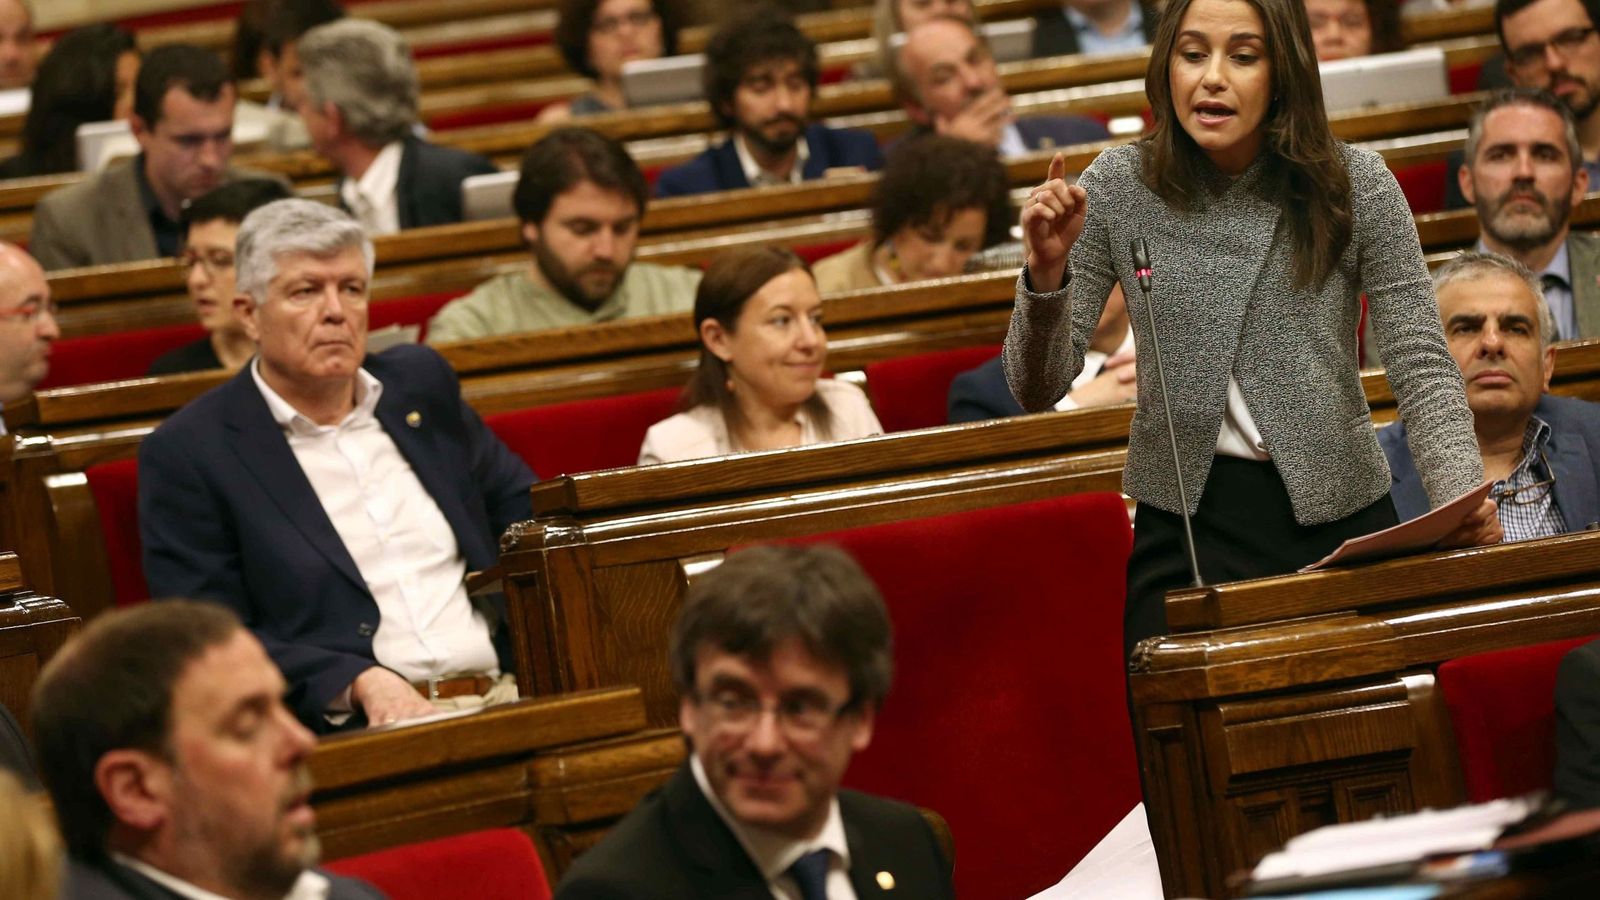 Foto: La líder de Ciudadanos, Inés Arrimadas, pregunta al presidente de la Generalitat, Carles Puigdemont durante la sesión de control al gobierno catalán celebrada en el Parlament. (Efe)